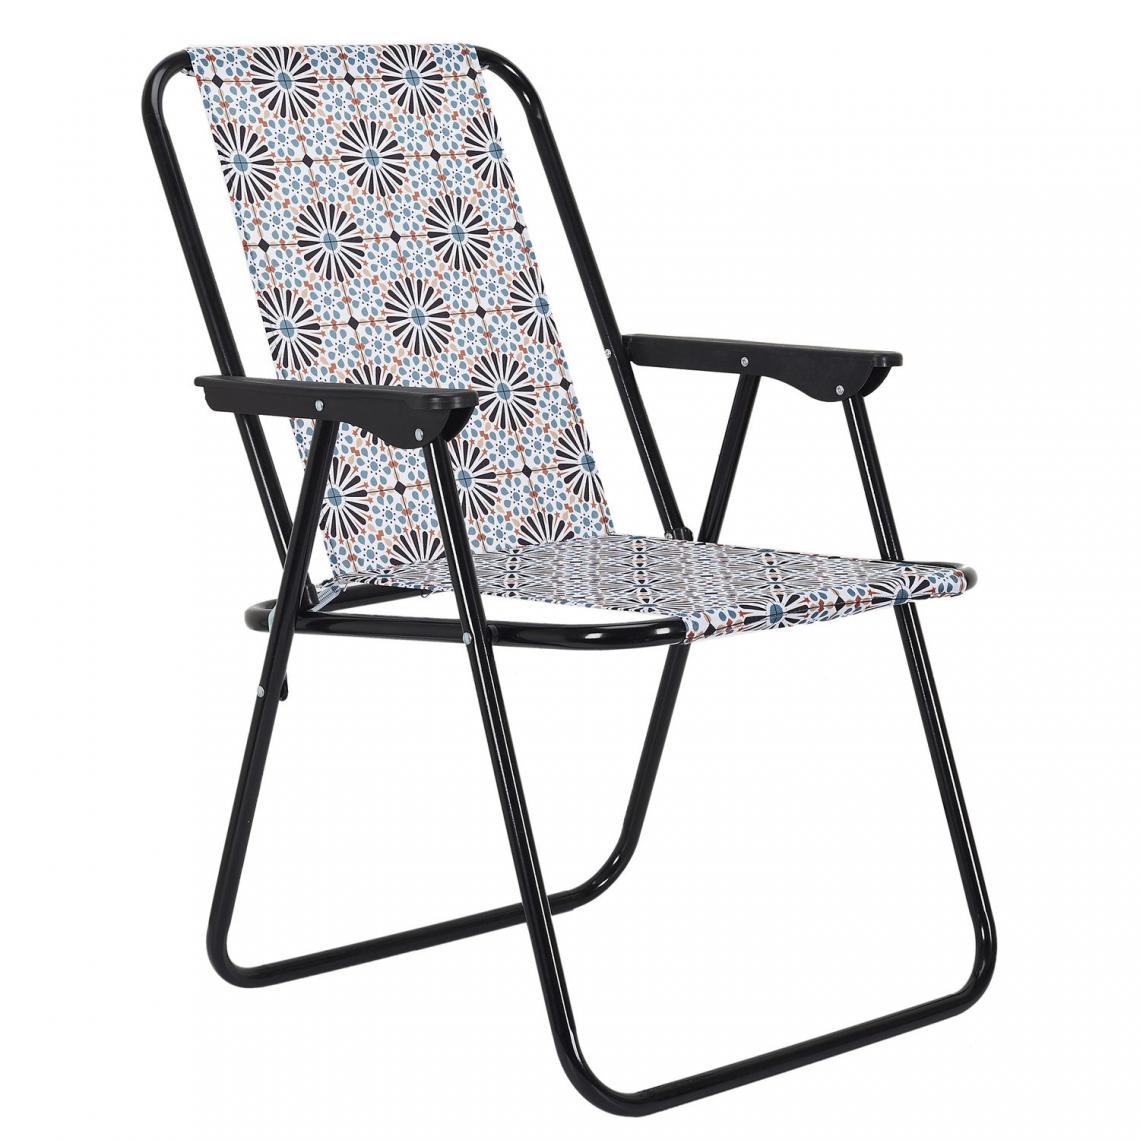 Toilinux - Chaise pliante Patio - Imprimé kaléidoscope - Bleu et orange - Chaises de jardin